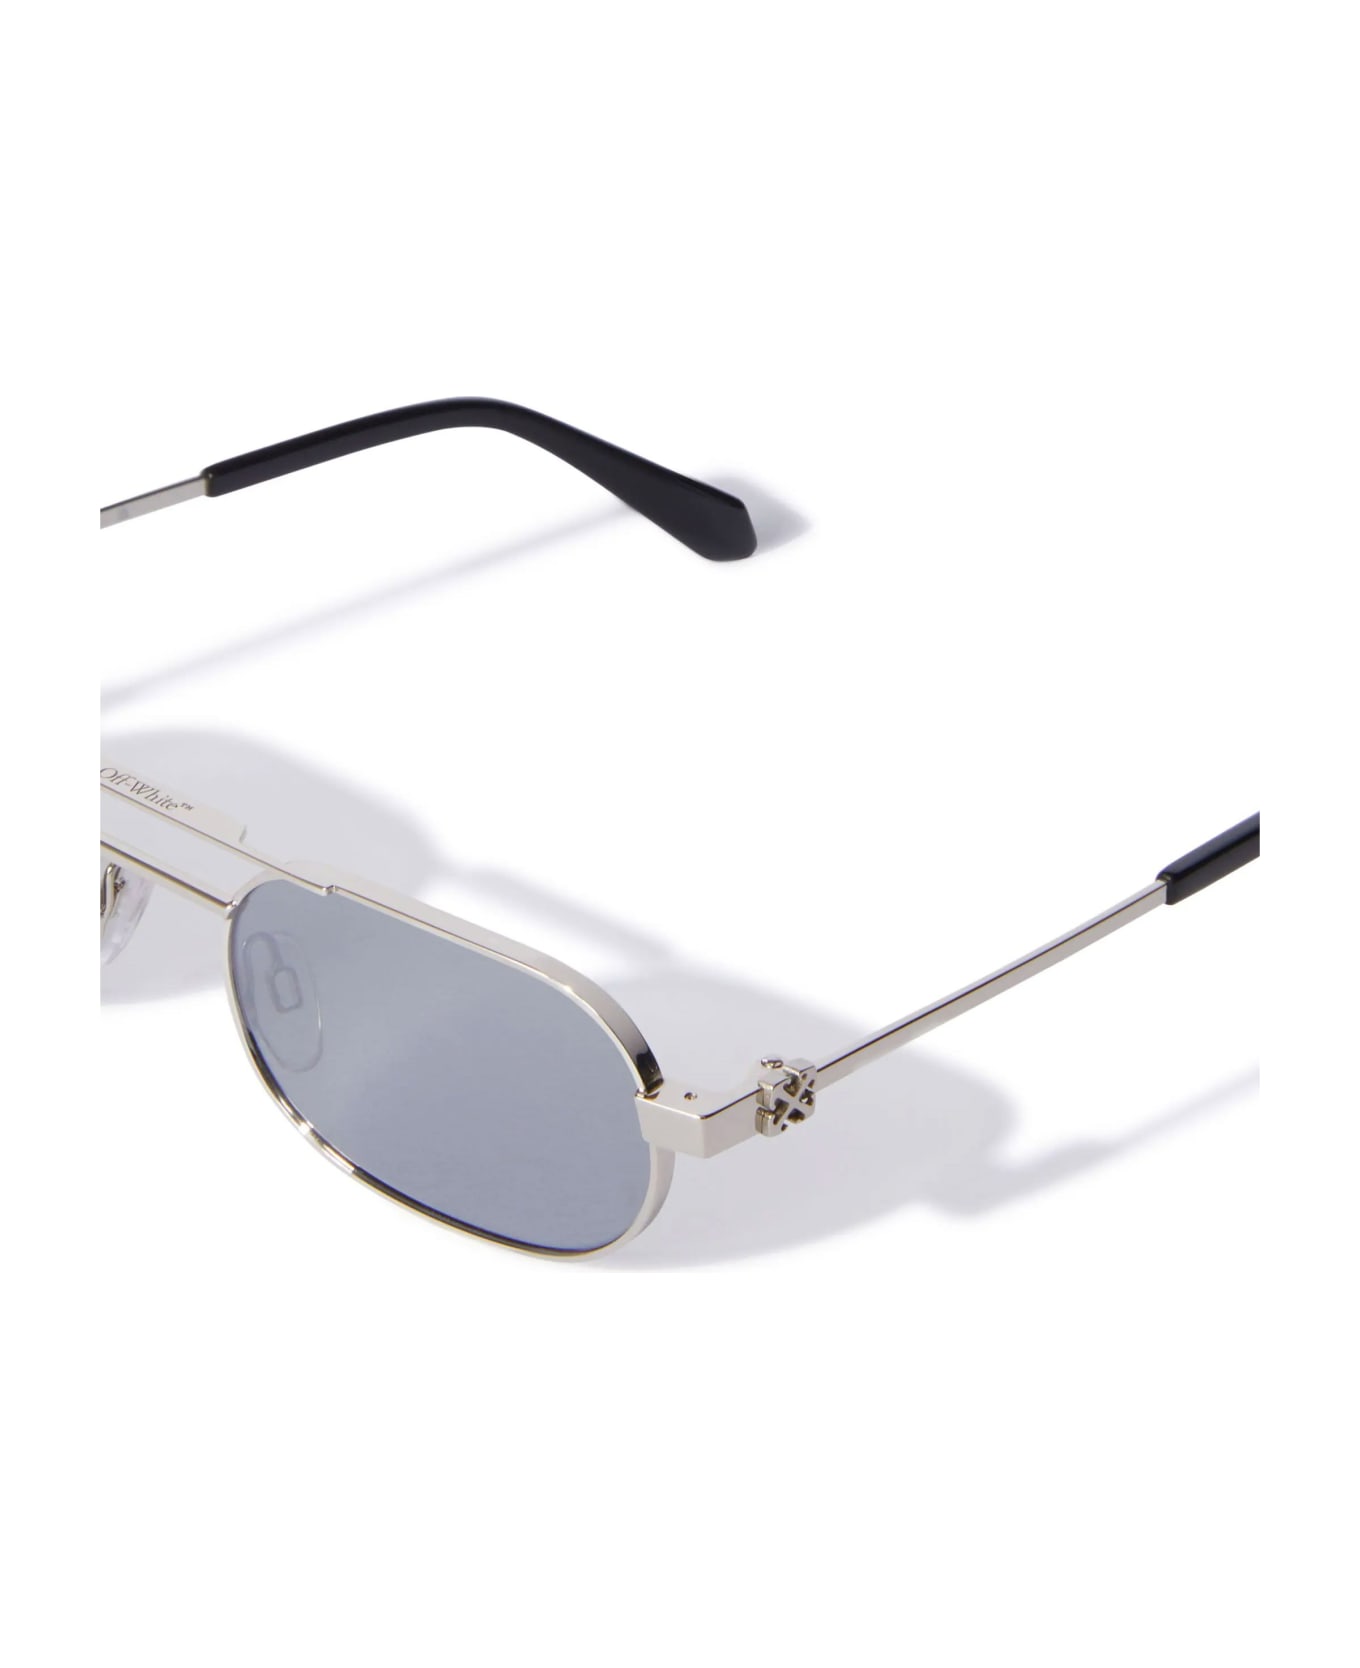 Off-White Sunglasses - Silver/Silver